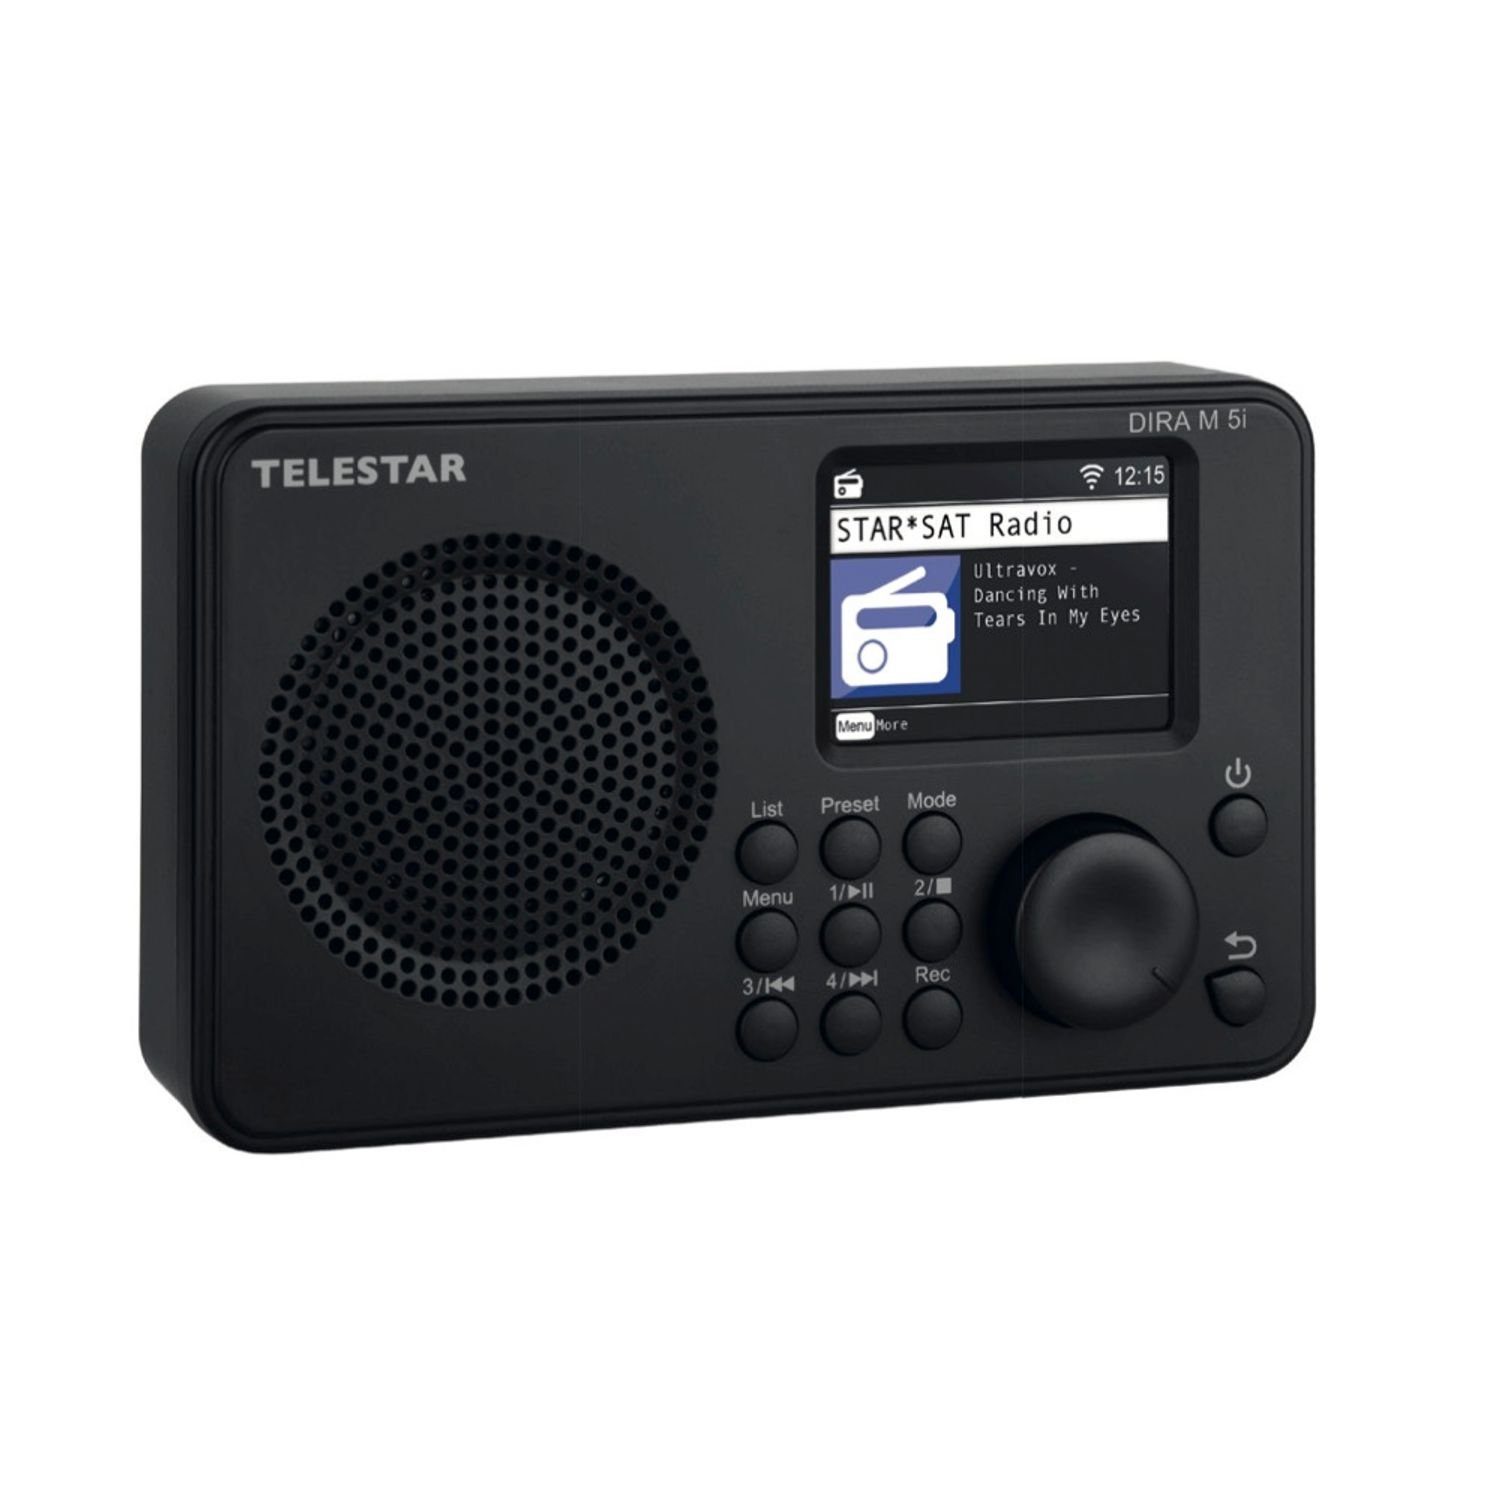 W, TELESTAR DIRA USB 4 Internet-Radio M via Wecker Soundmate Internetradio Bluetooth Mediafunktionen App) Fernbedienung (Internetradio, 5i